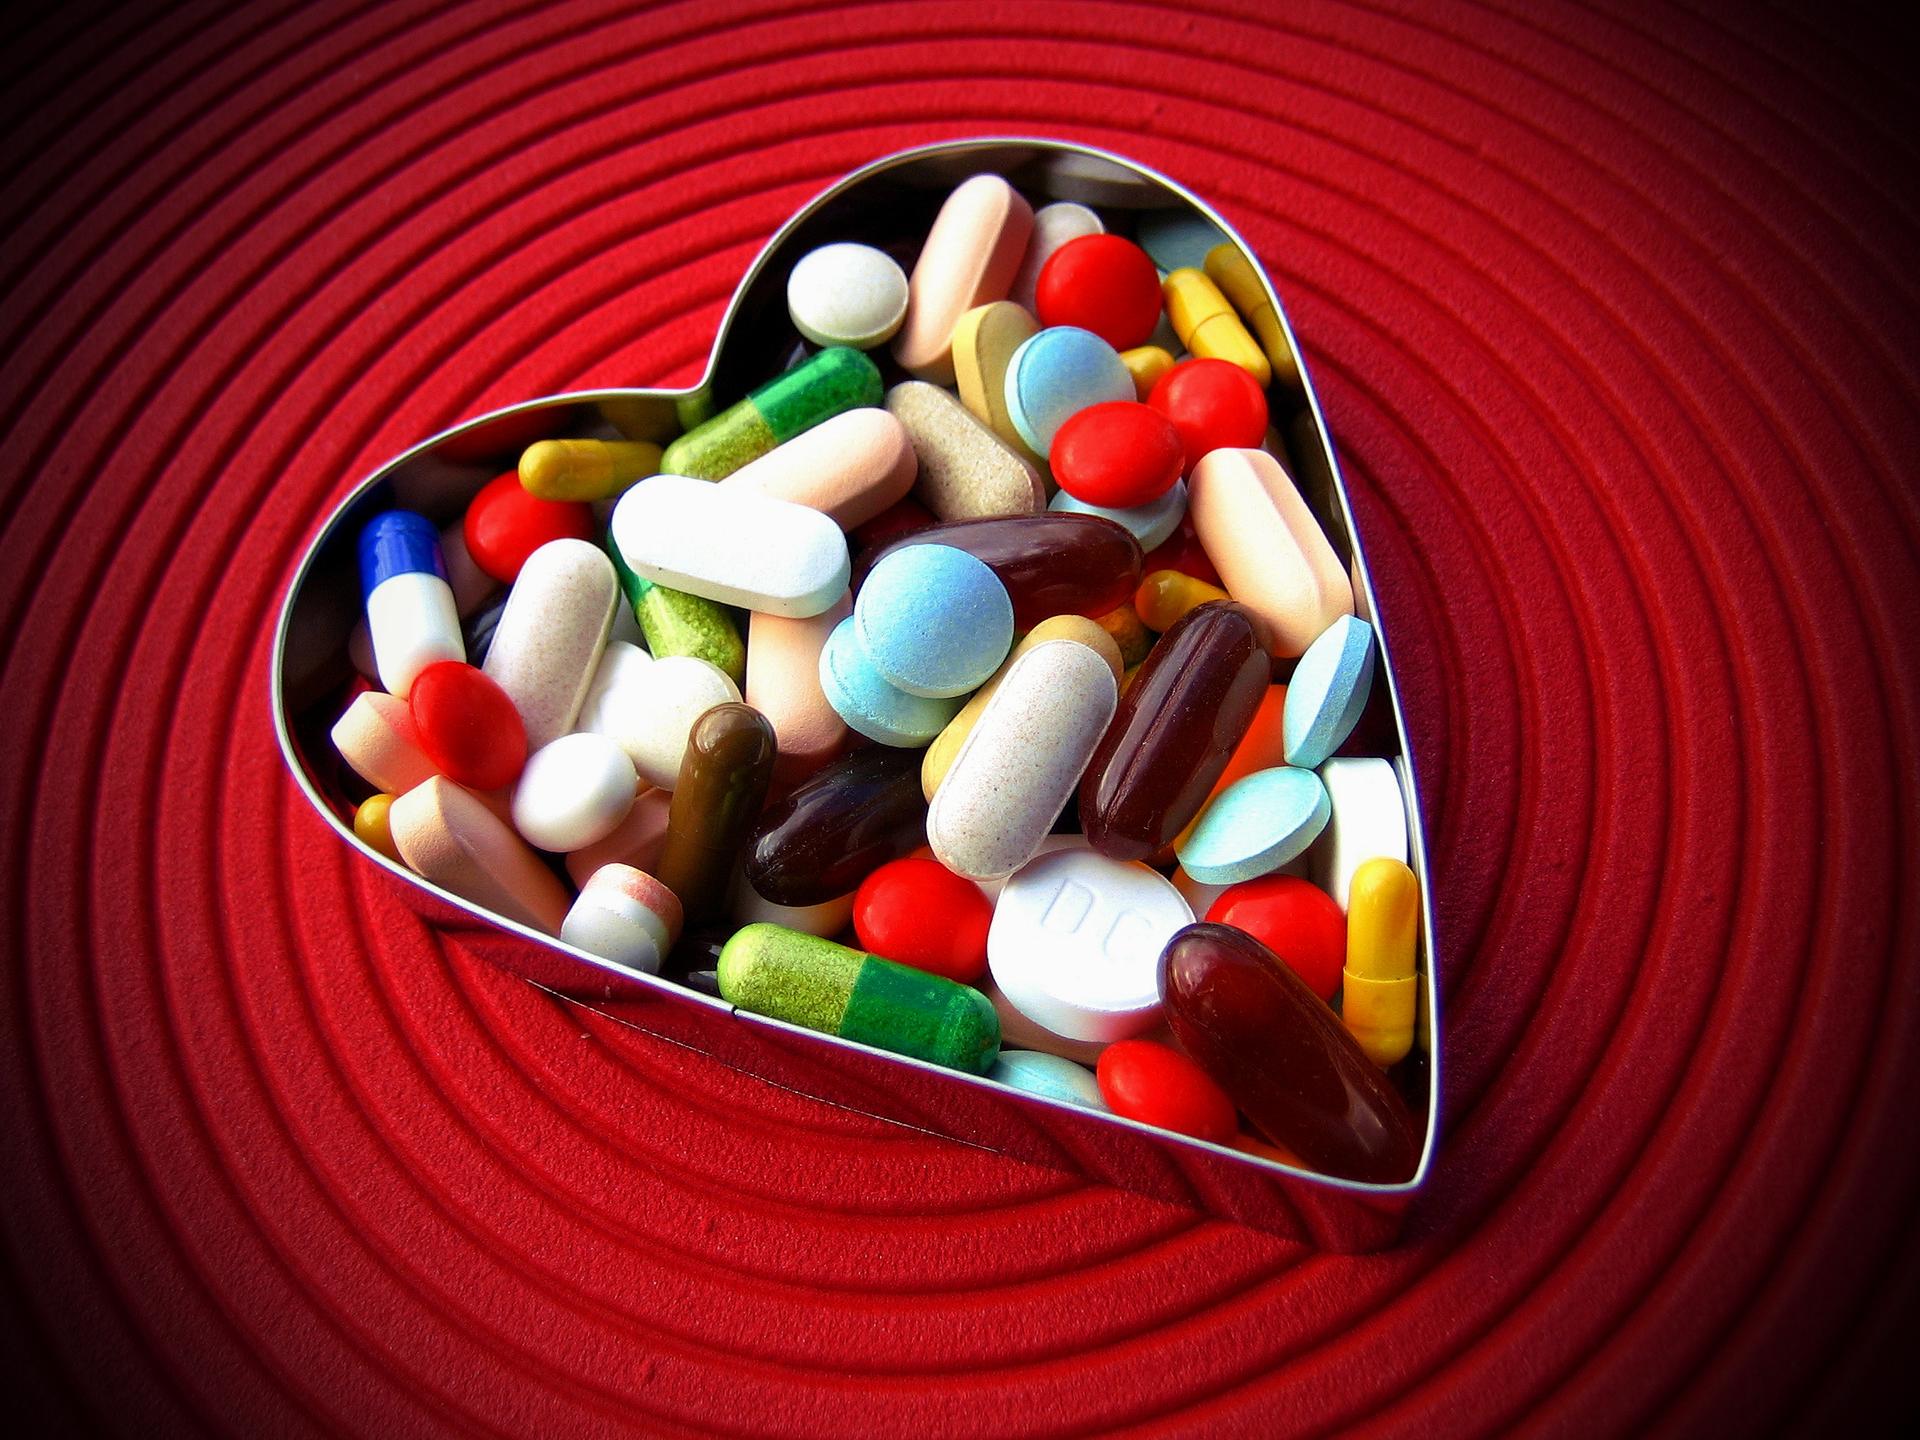 AMARYL 4 mg tabletta